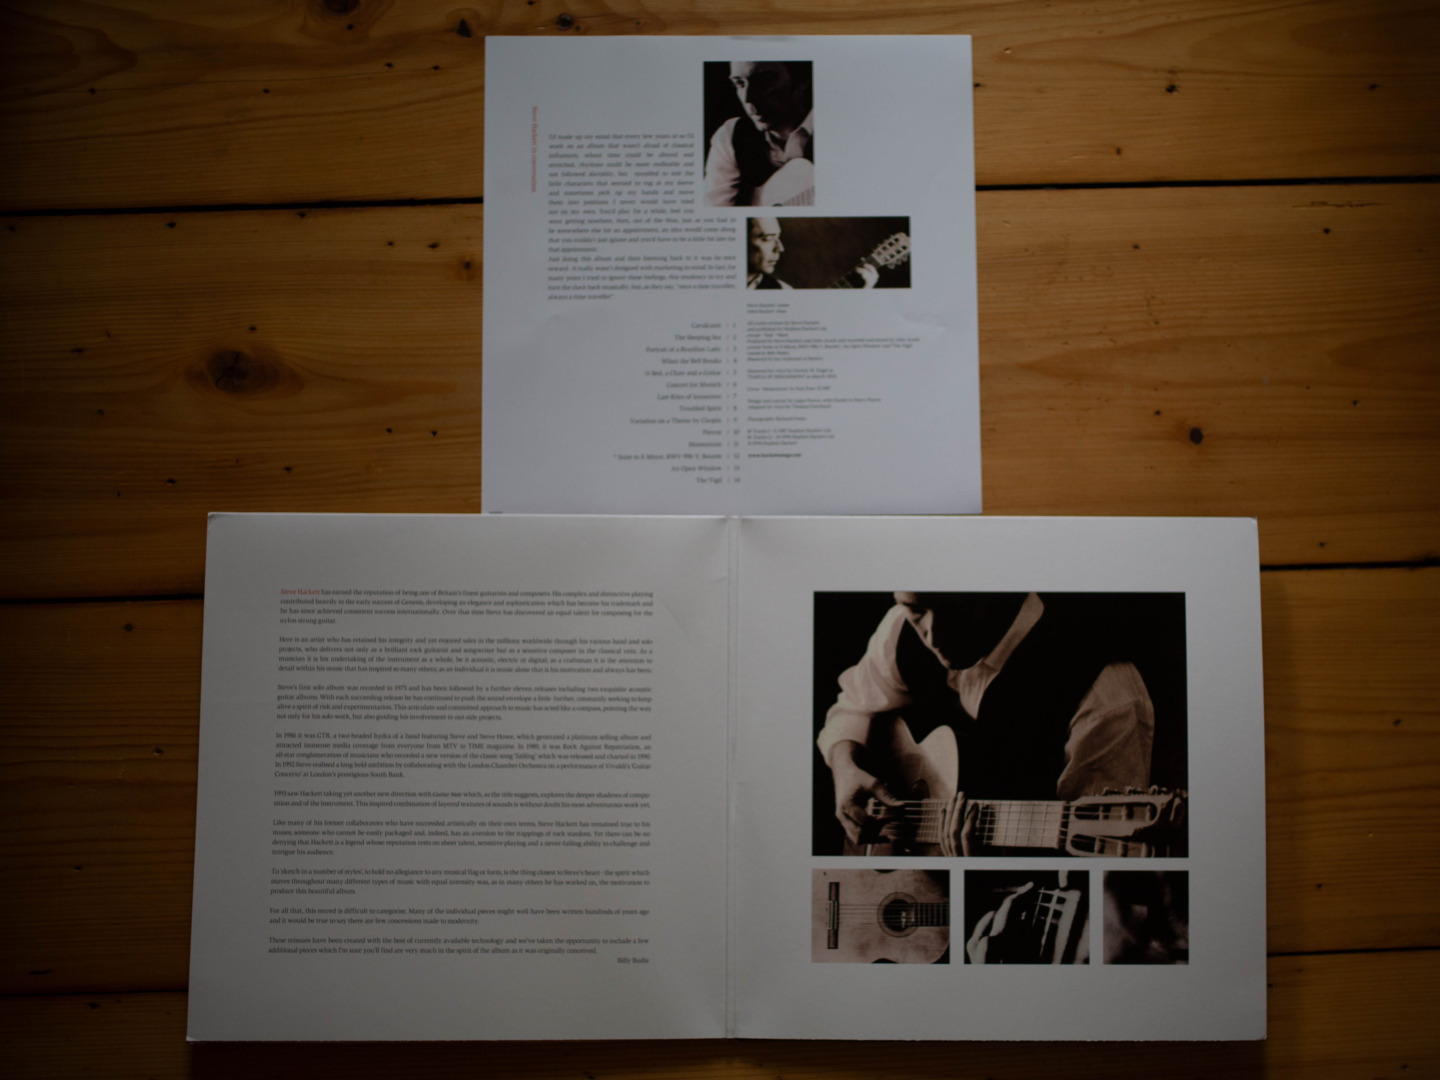 #VinylCorner: Steve Hackett - Bay Of Kings (Reissue)